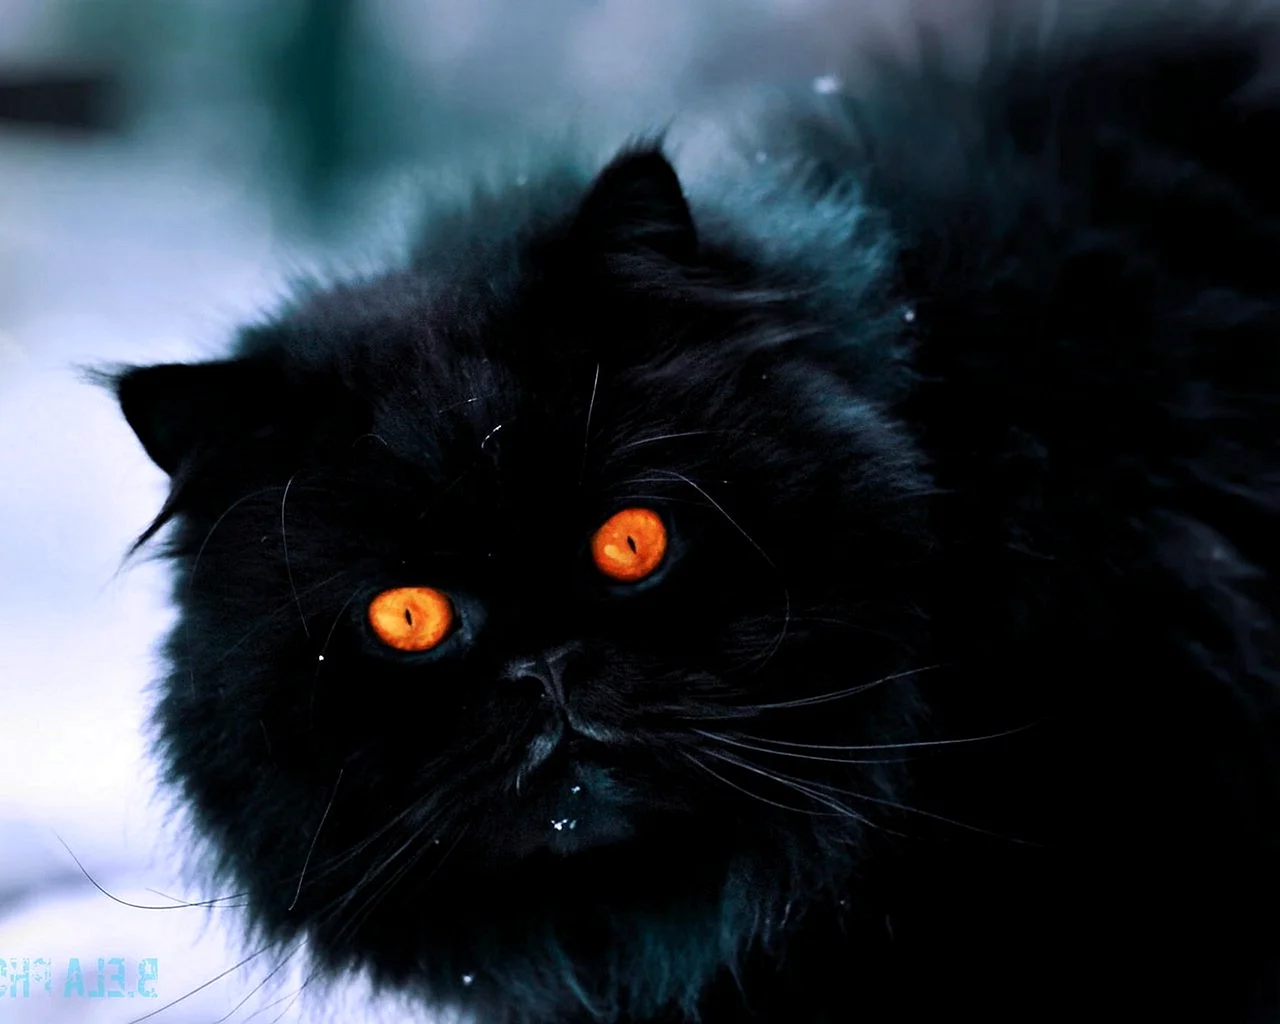 Черный пушистый кот с желтыми глазами